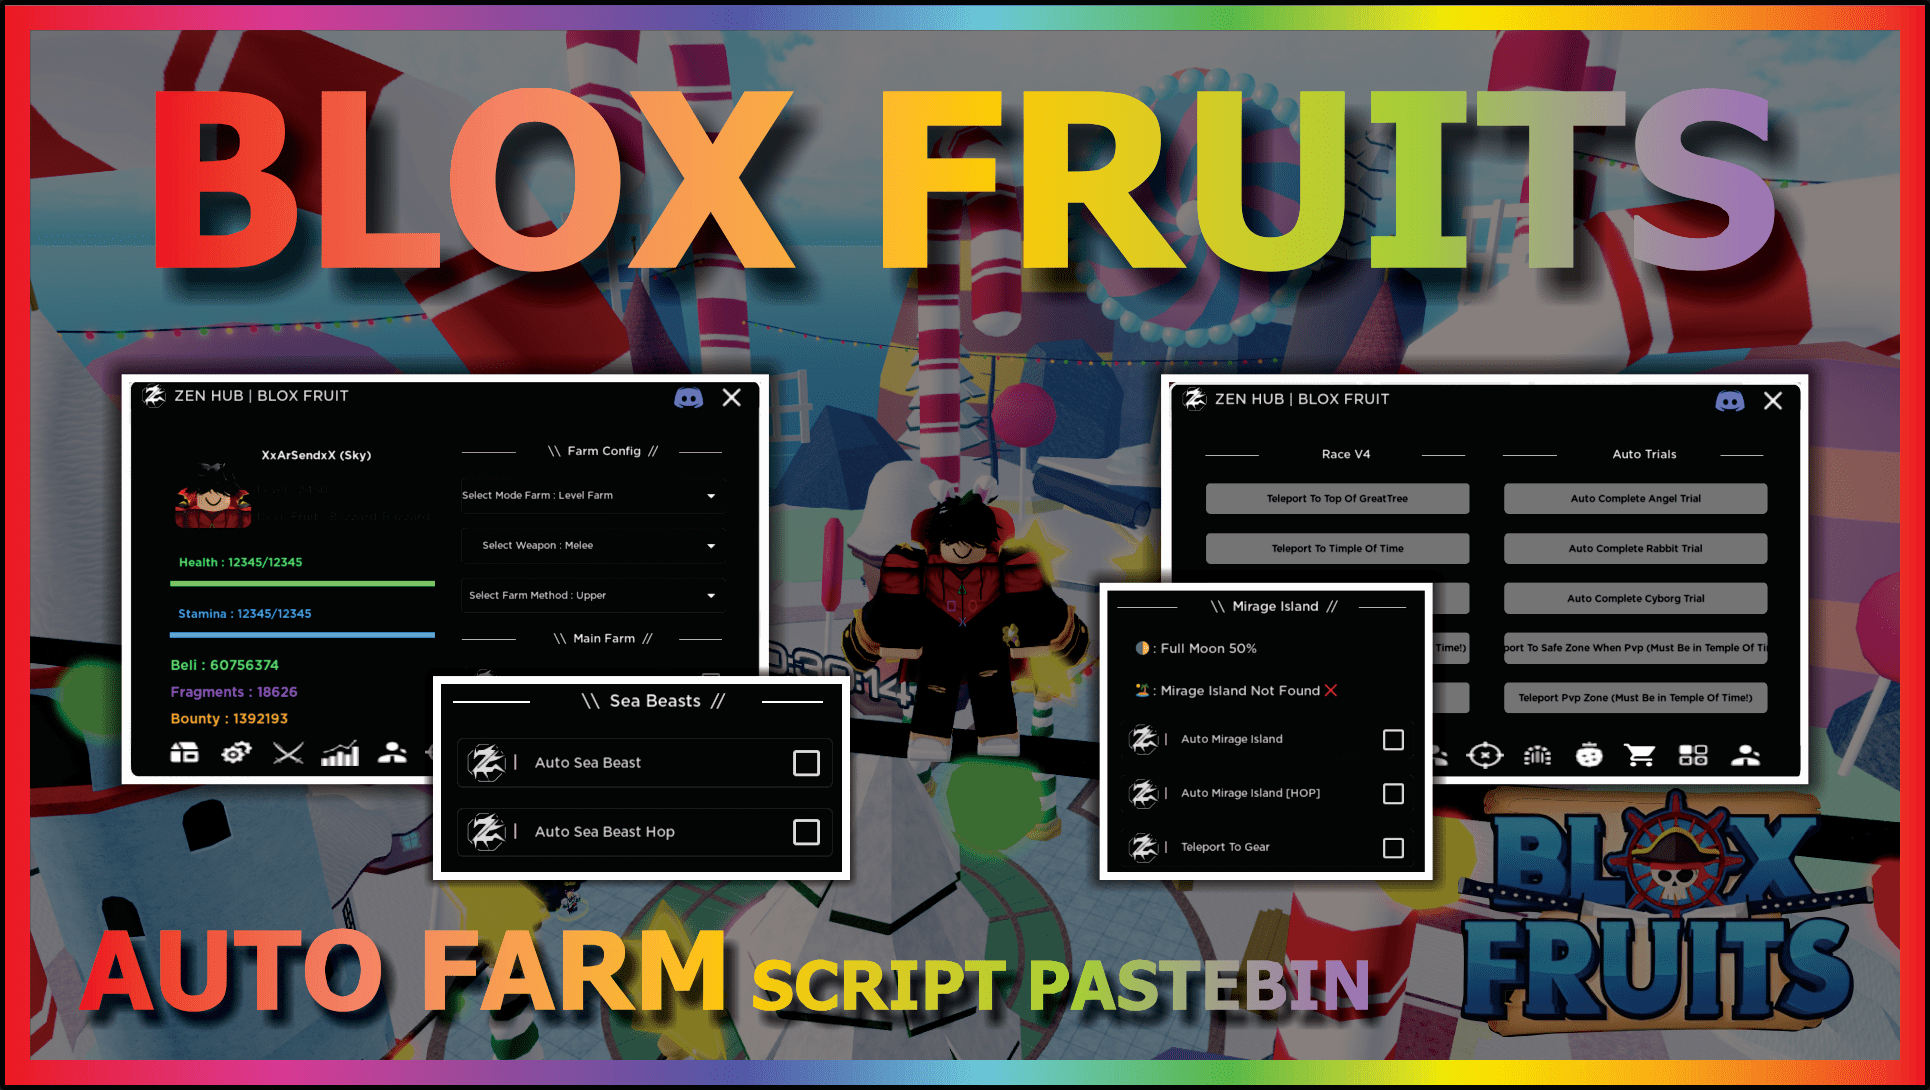 Blox Fruits Update Race V4 Script – ScriptPastebin